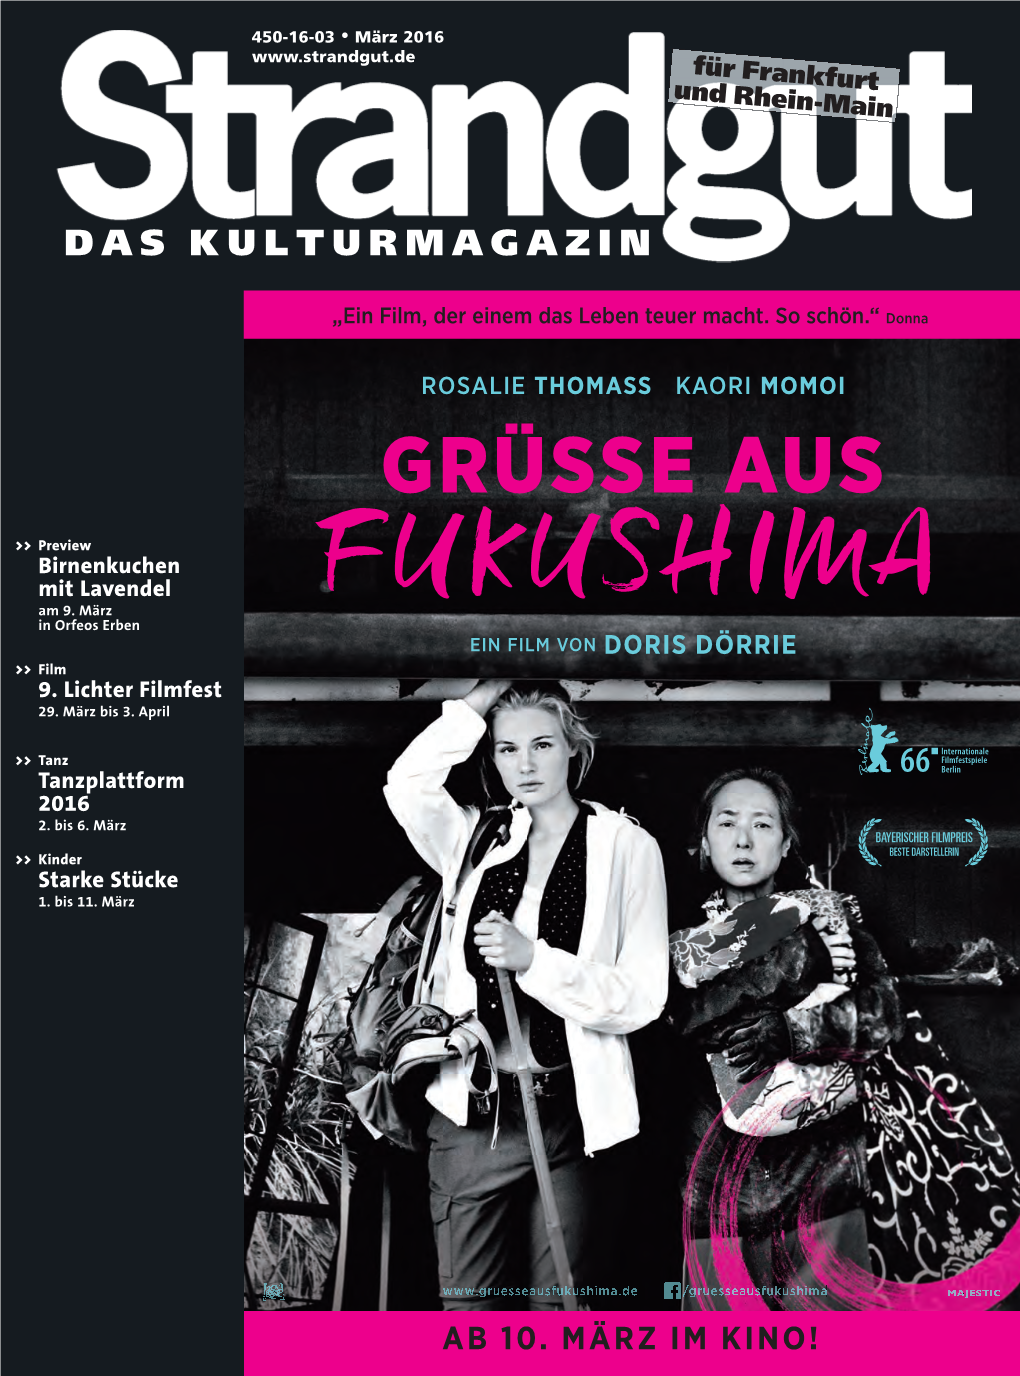 FUKUSHIMA EIN FILM VON DORIS DÖRRIE >> Film 9